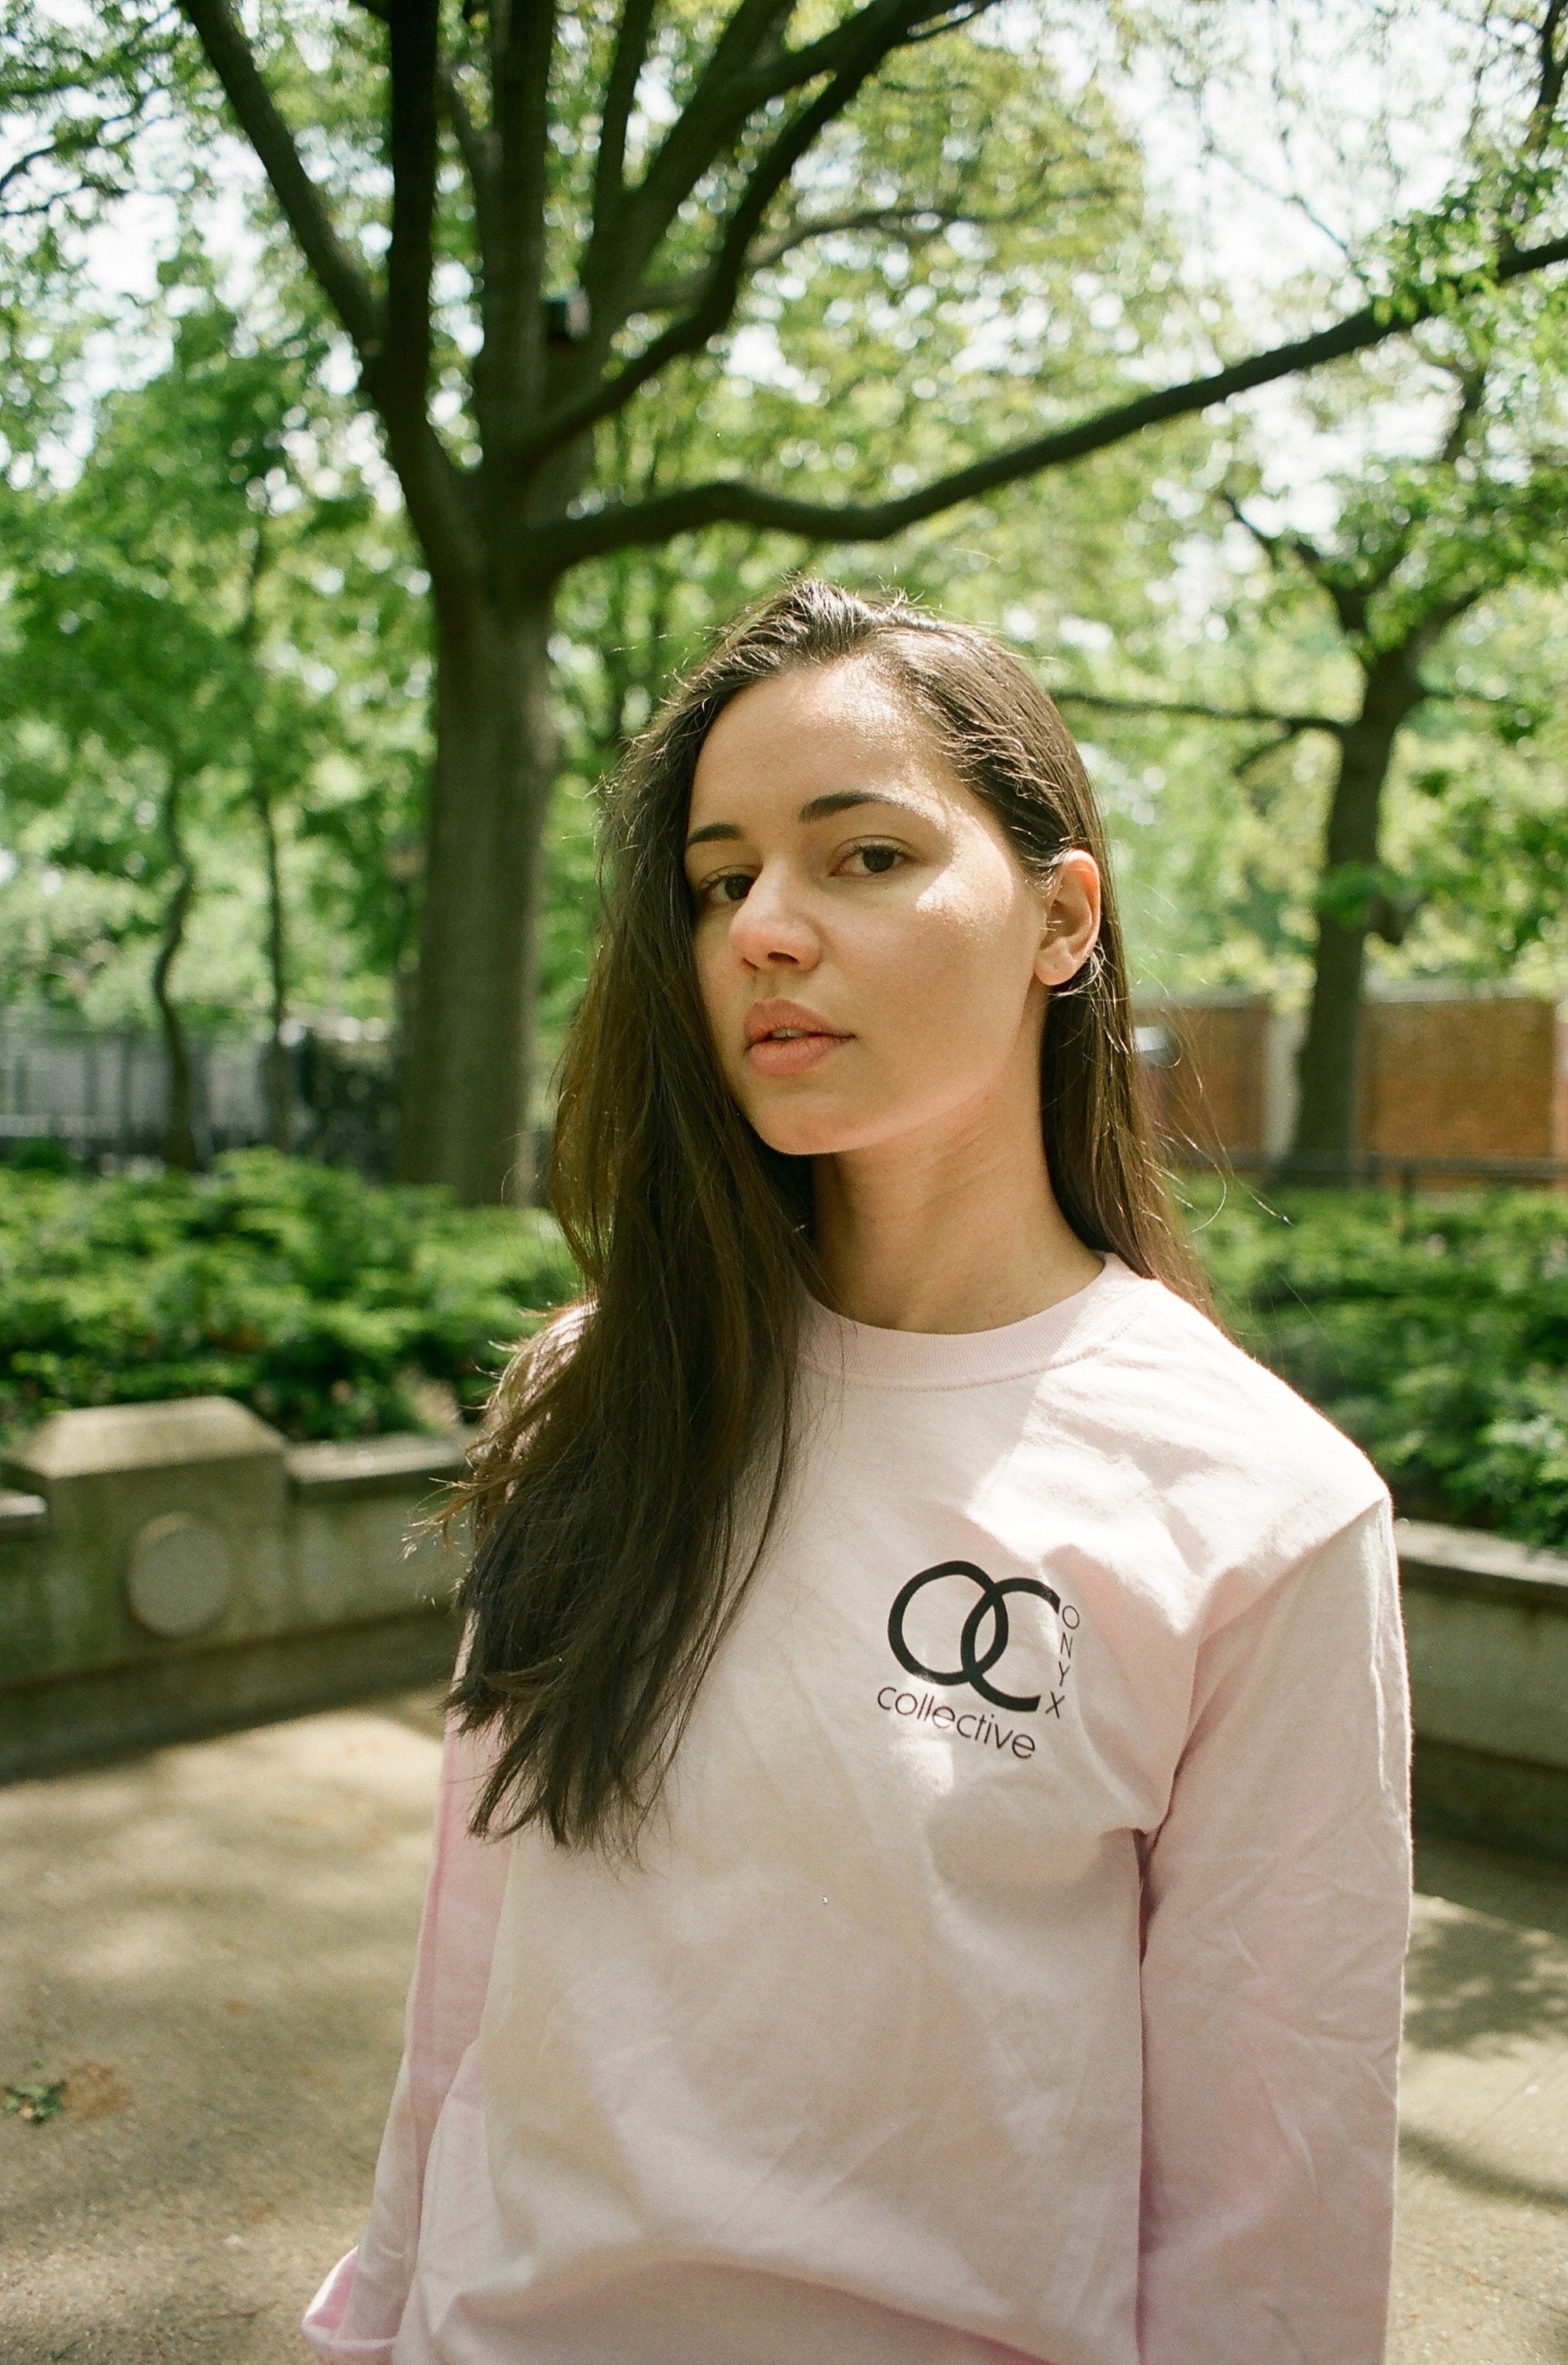 NYのクリエイター集団 Onyx Collective によるTシャツカプセルコレクション